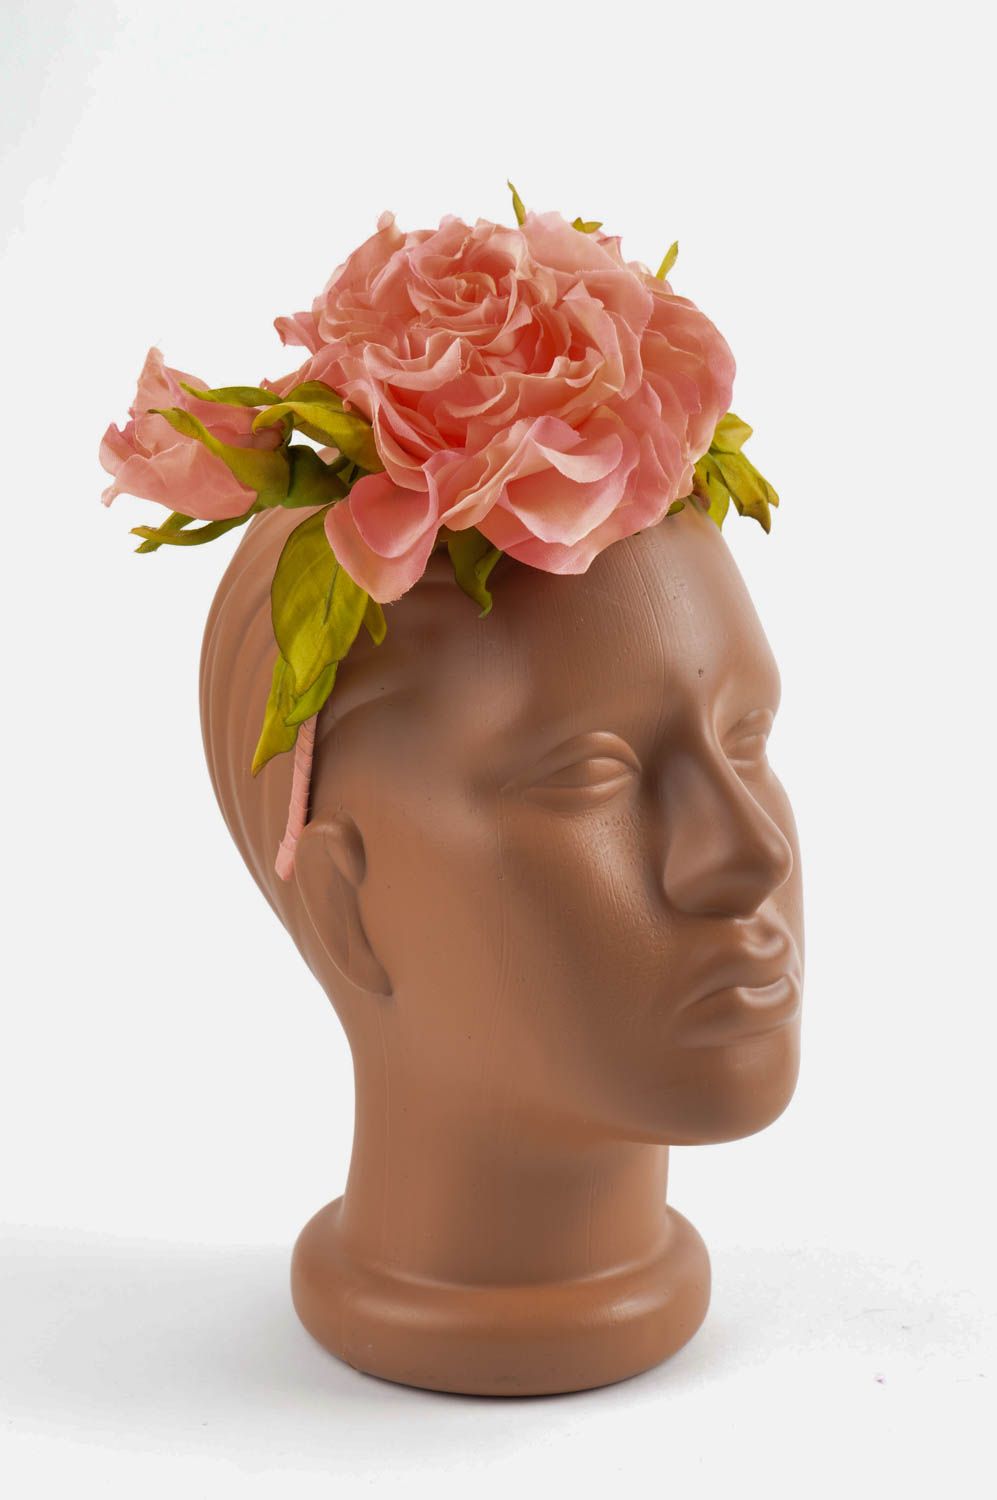 Аксессуар для волос хэнд мэйд обруч на голову обруч с цветами персиковыми  фото 1